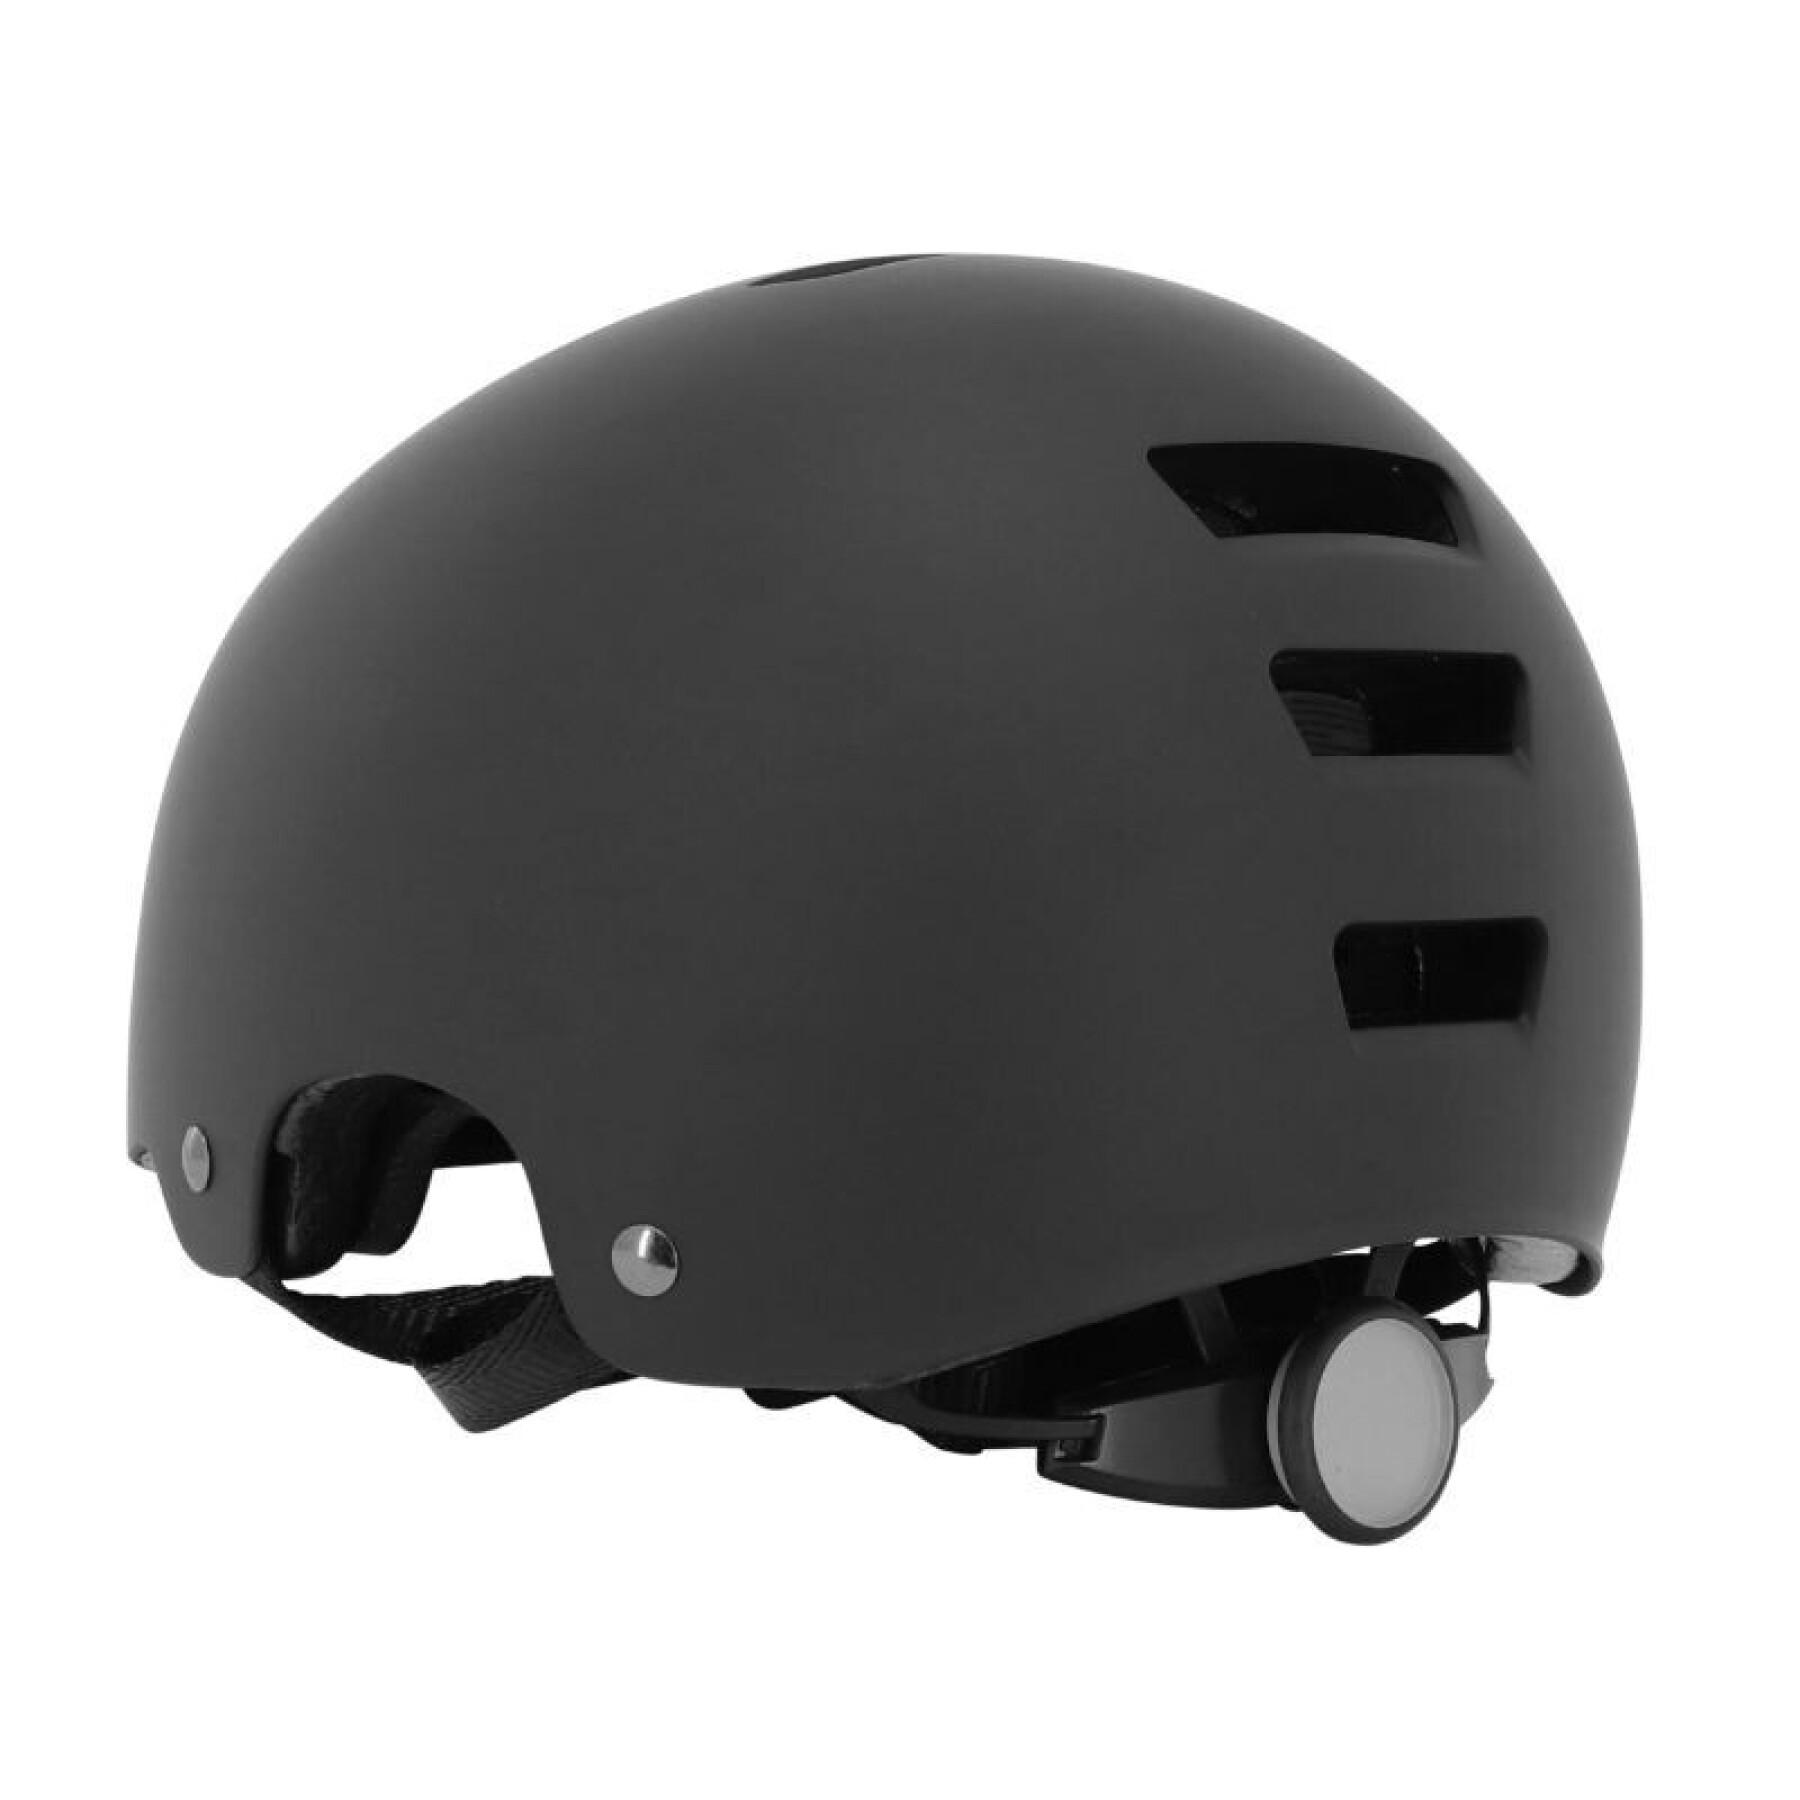 Urban helmet for kids Ges Explorer Fit System